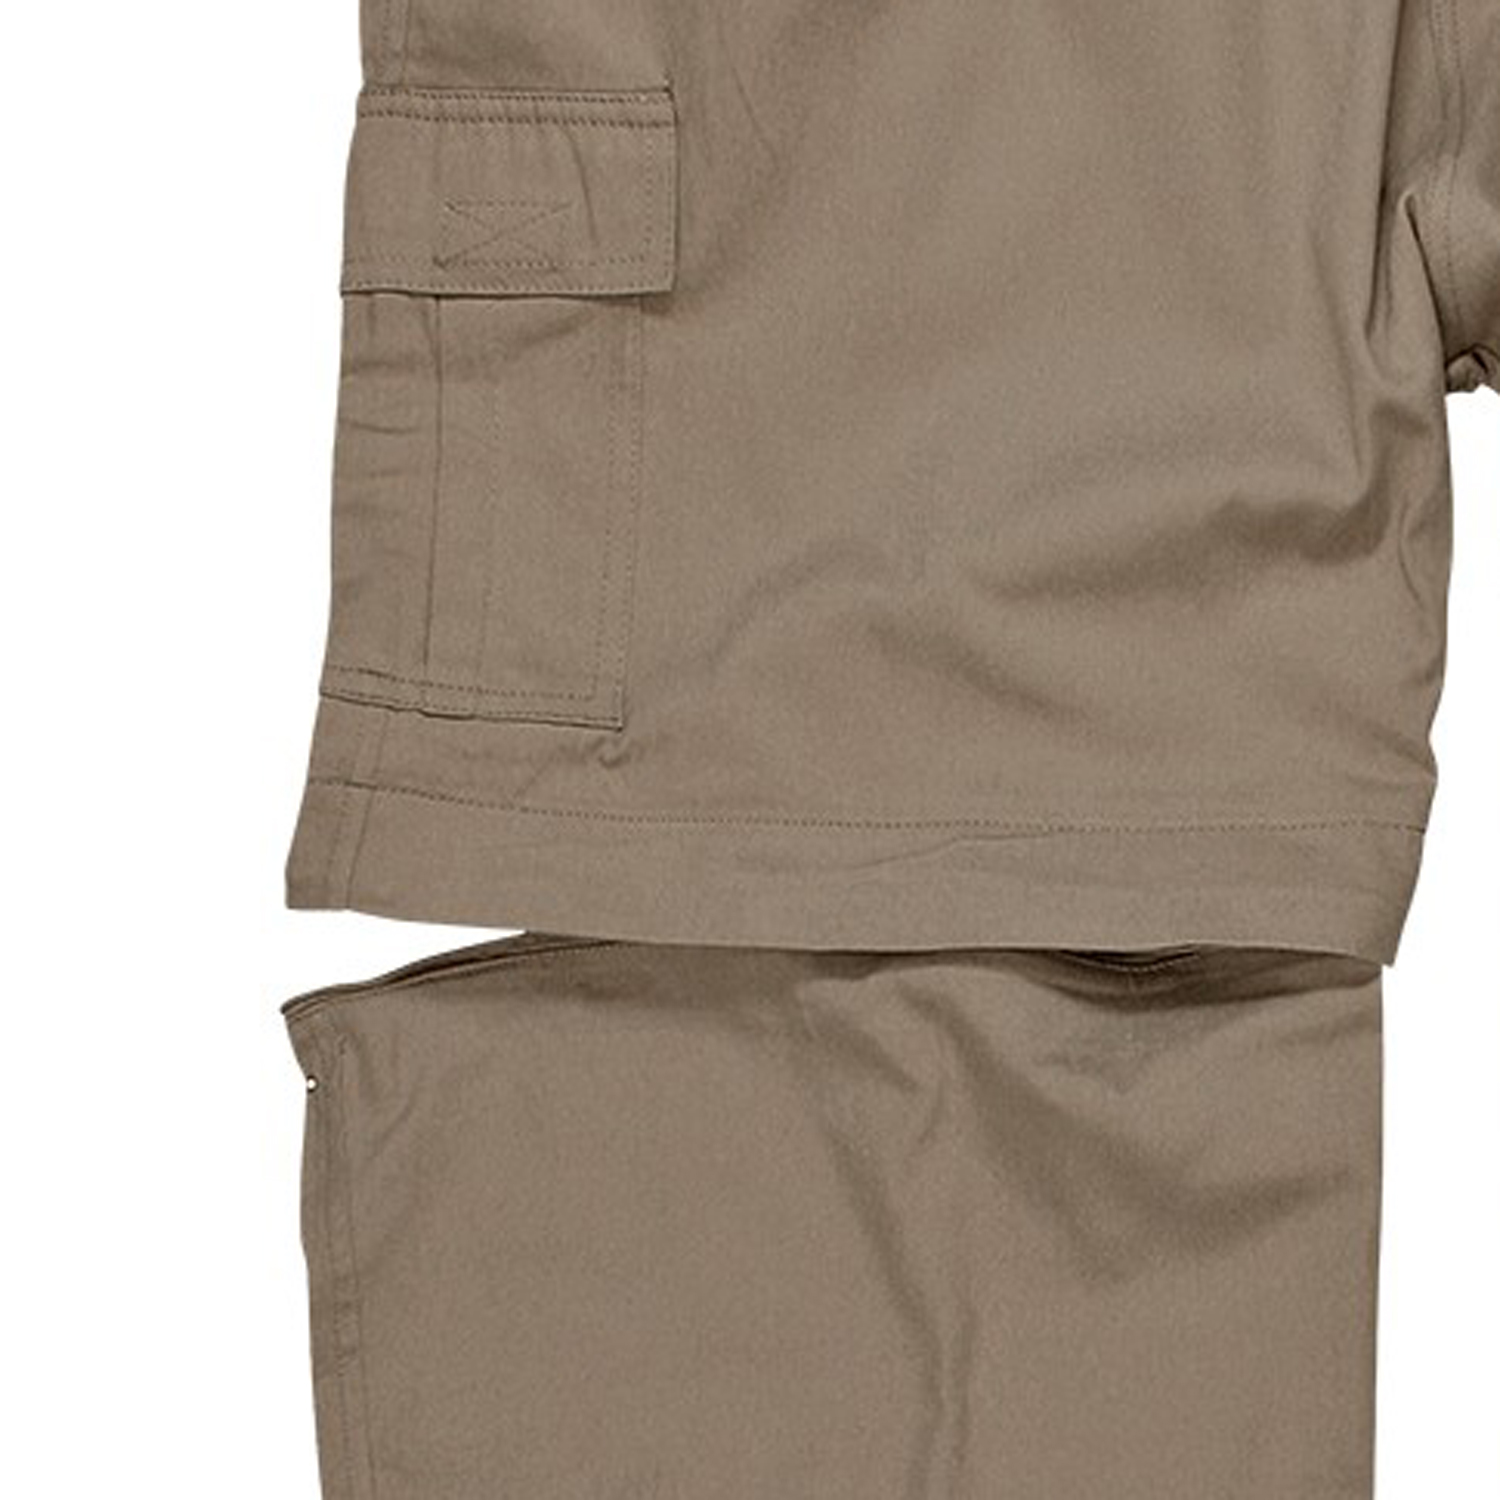 Zipp-Off-Hose in khaki von Abraxas in Übergrößen bis 10XL